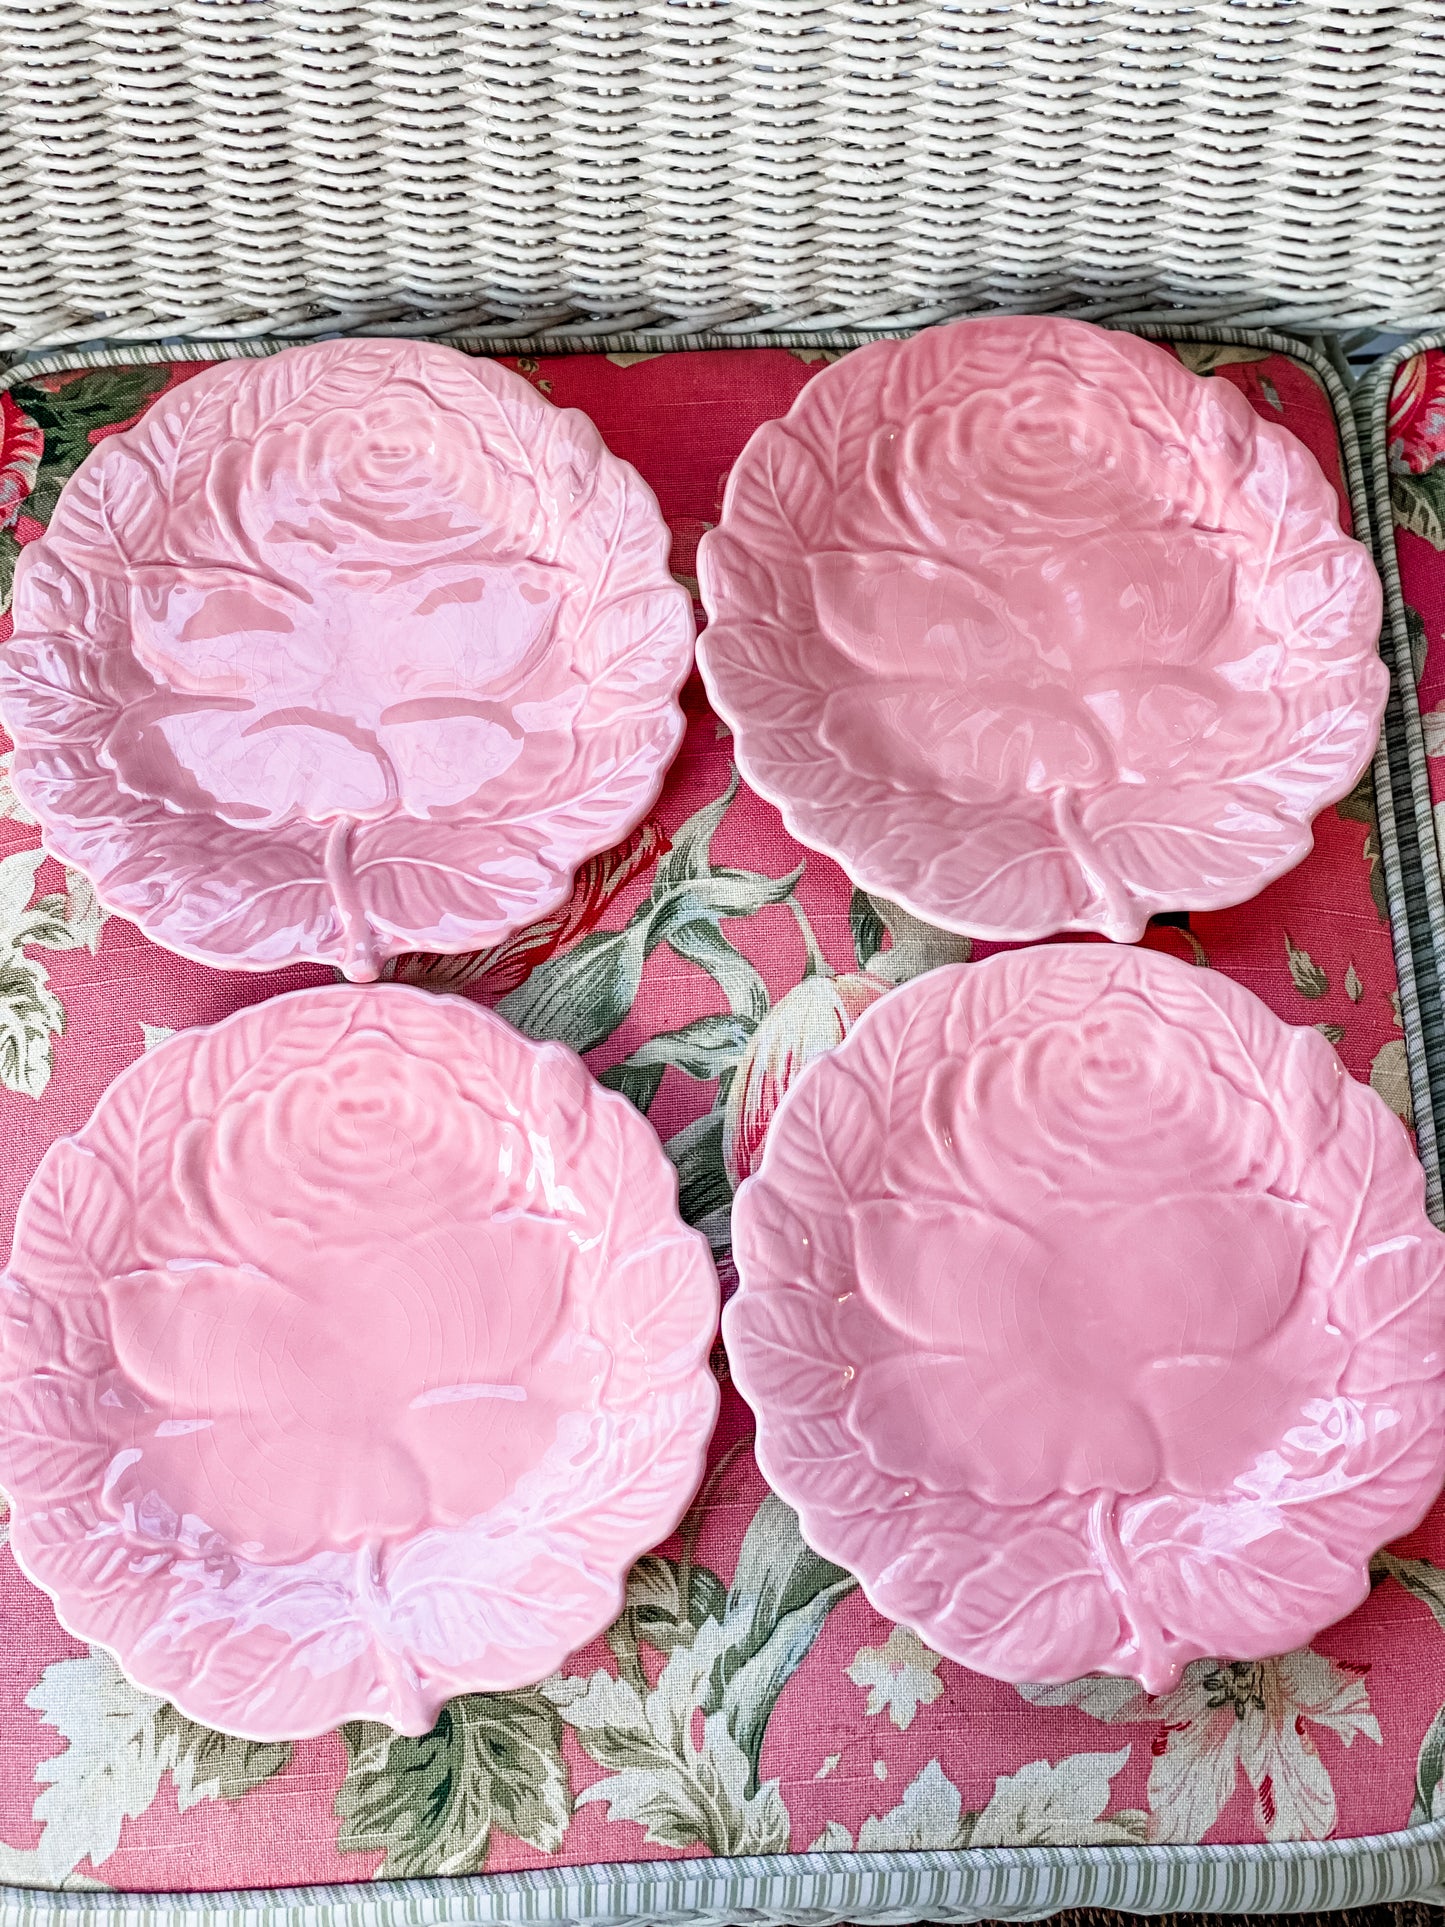 Set of 4 Bordallo Pinheiro Rose Plates